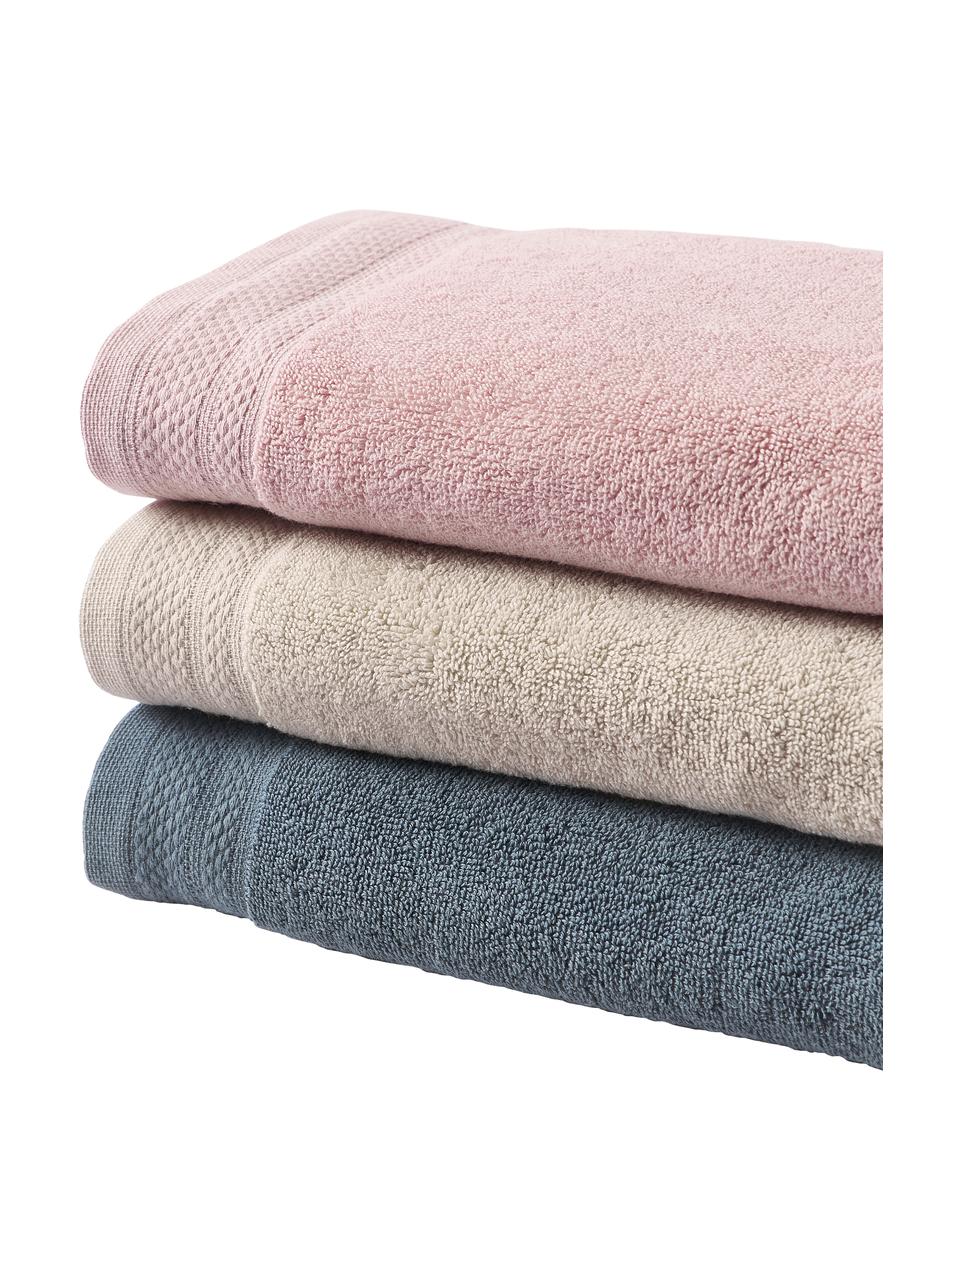 Ręcznik z bawełny organicznej Premium, różne rozmiary, Niebieskozielony, Ręcznik do rąk, S 50 x D 100 cm